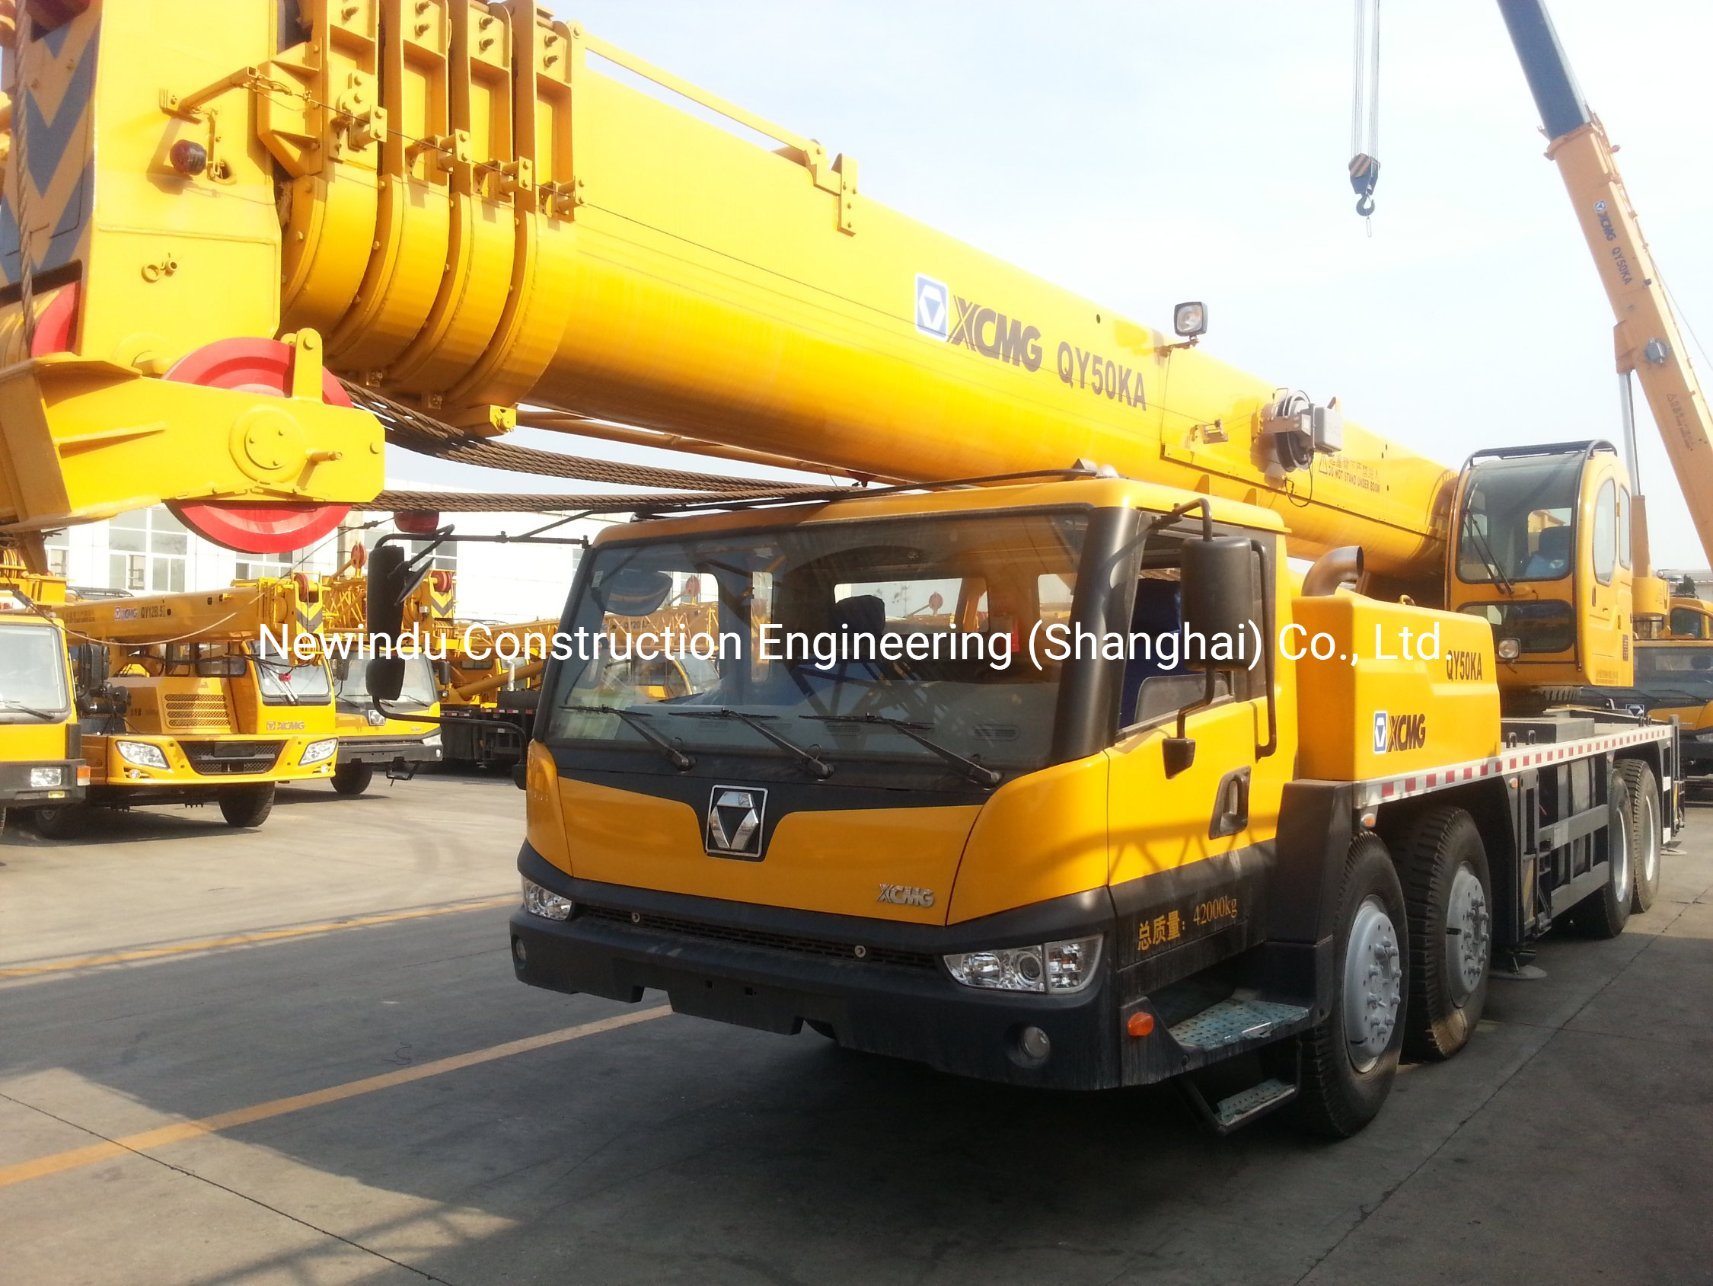 
                Officiële Qy50ka 50 ton hydraulische kraan voor zware heftrucks Verkoop
            